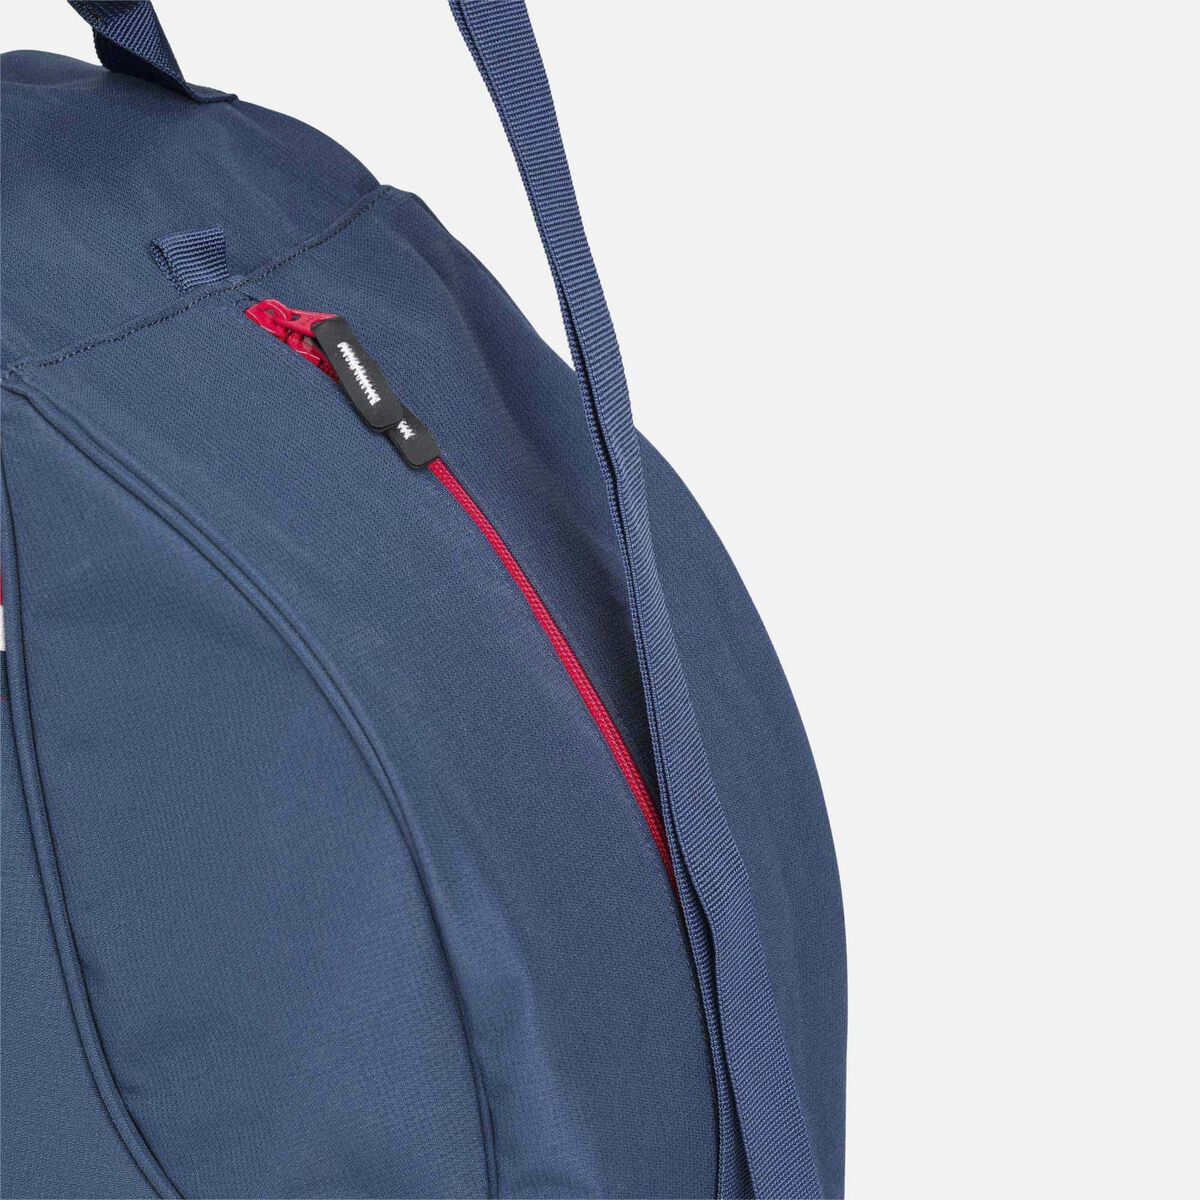 Rossignol Unisex Premium Strato Boot Bag 